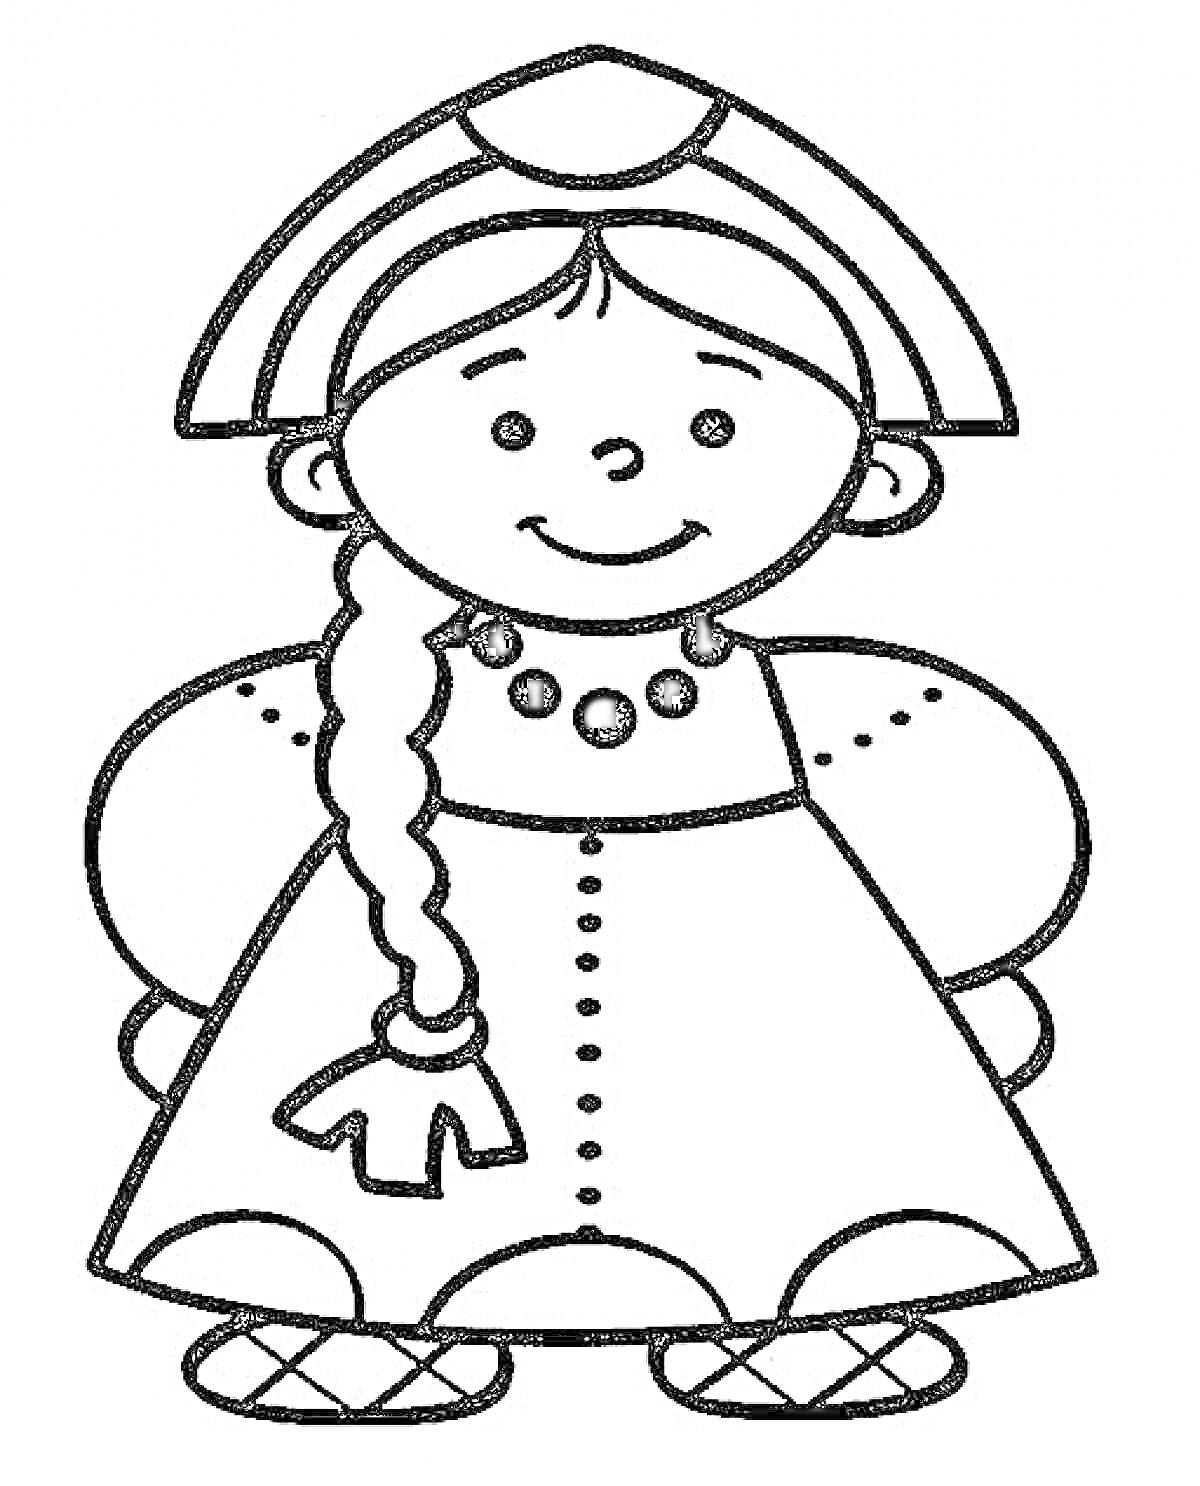 Раскраска Девочка в русском народном костюме с традиционной кокошником, косичкой, бусы, сарафан с пуговицами, рукава-фонарики, лапти